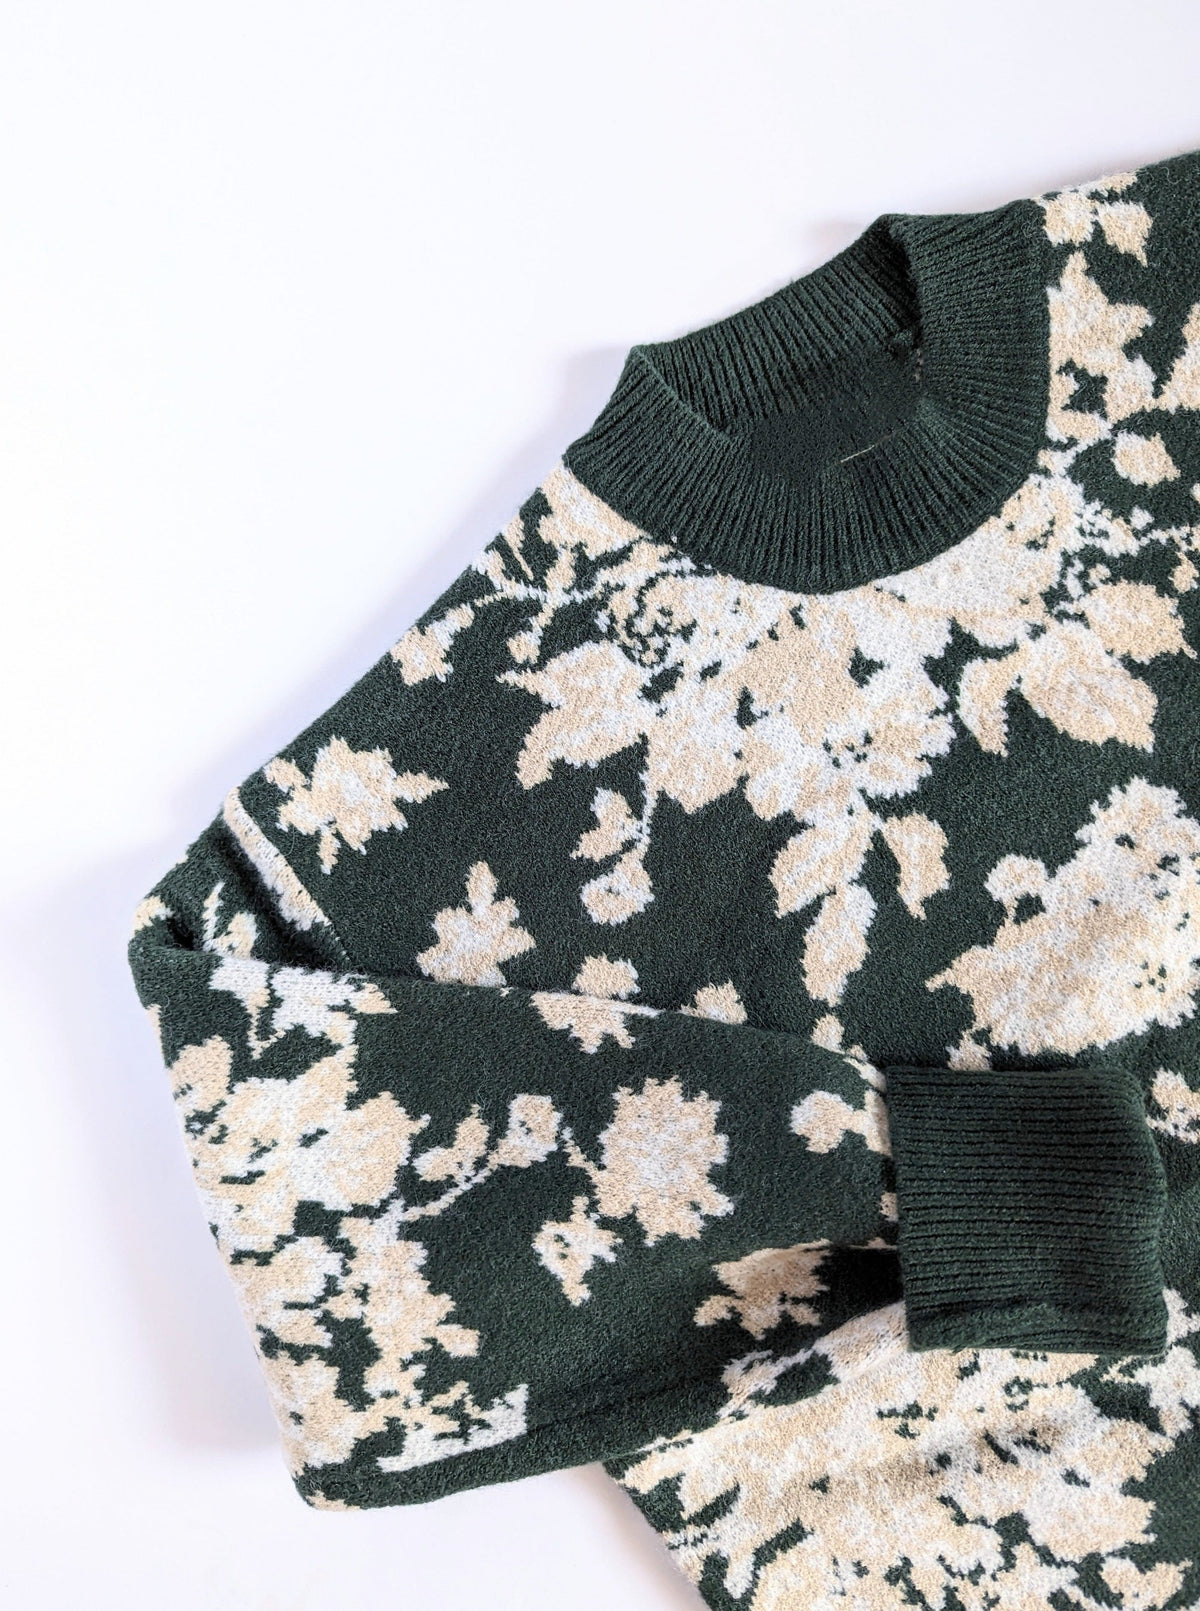 Floral Sweater | Dark Green